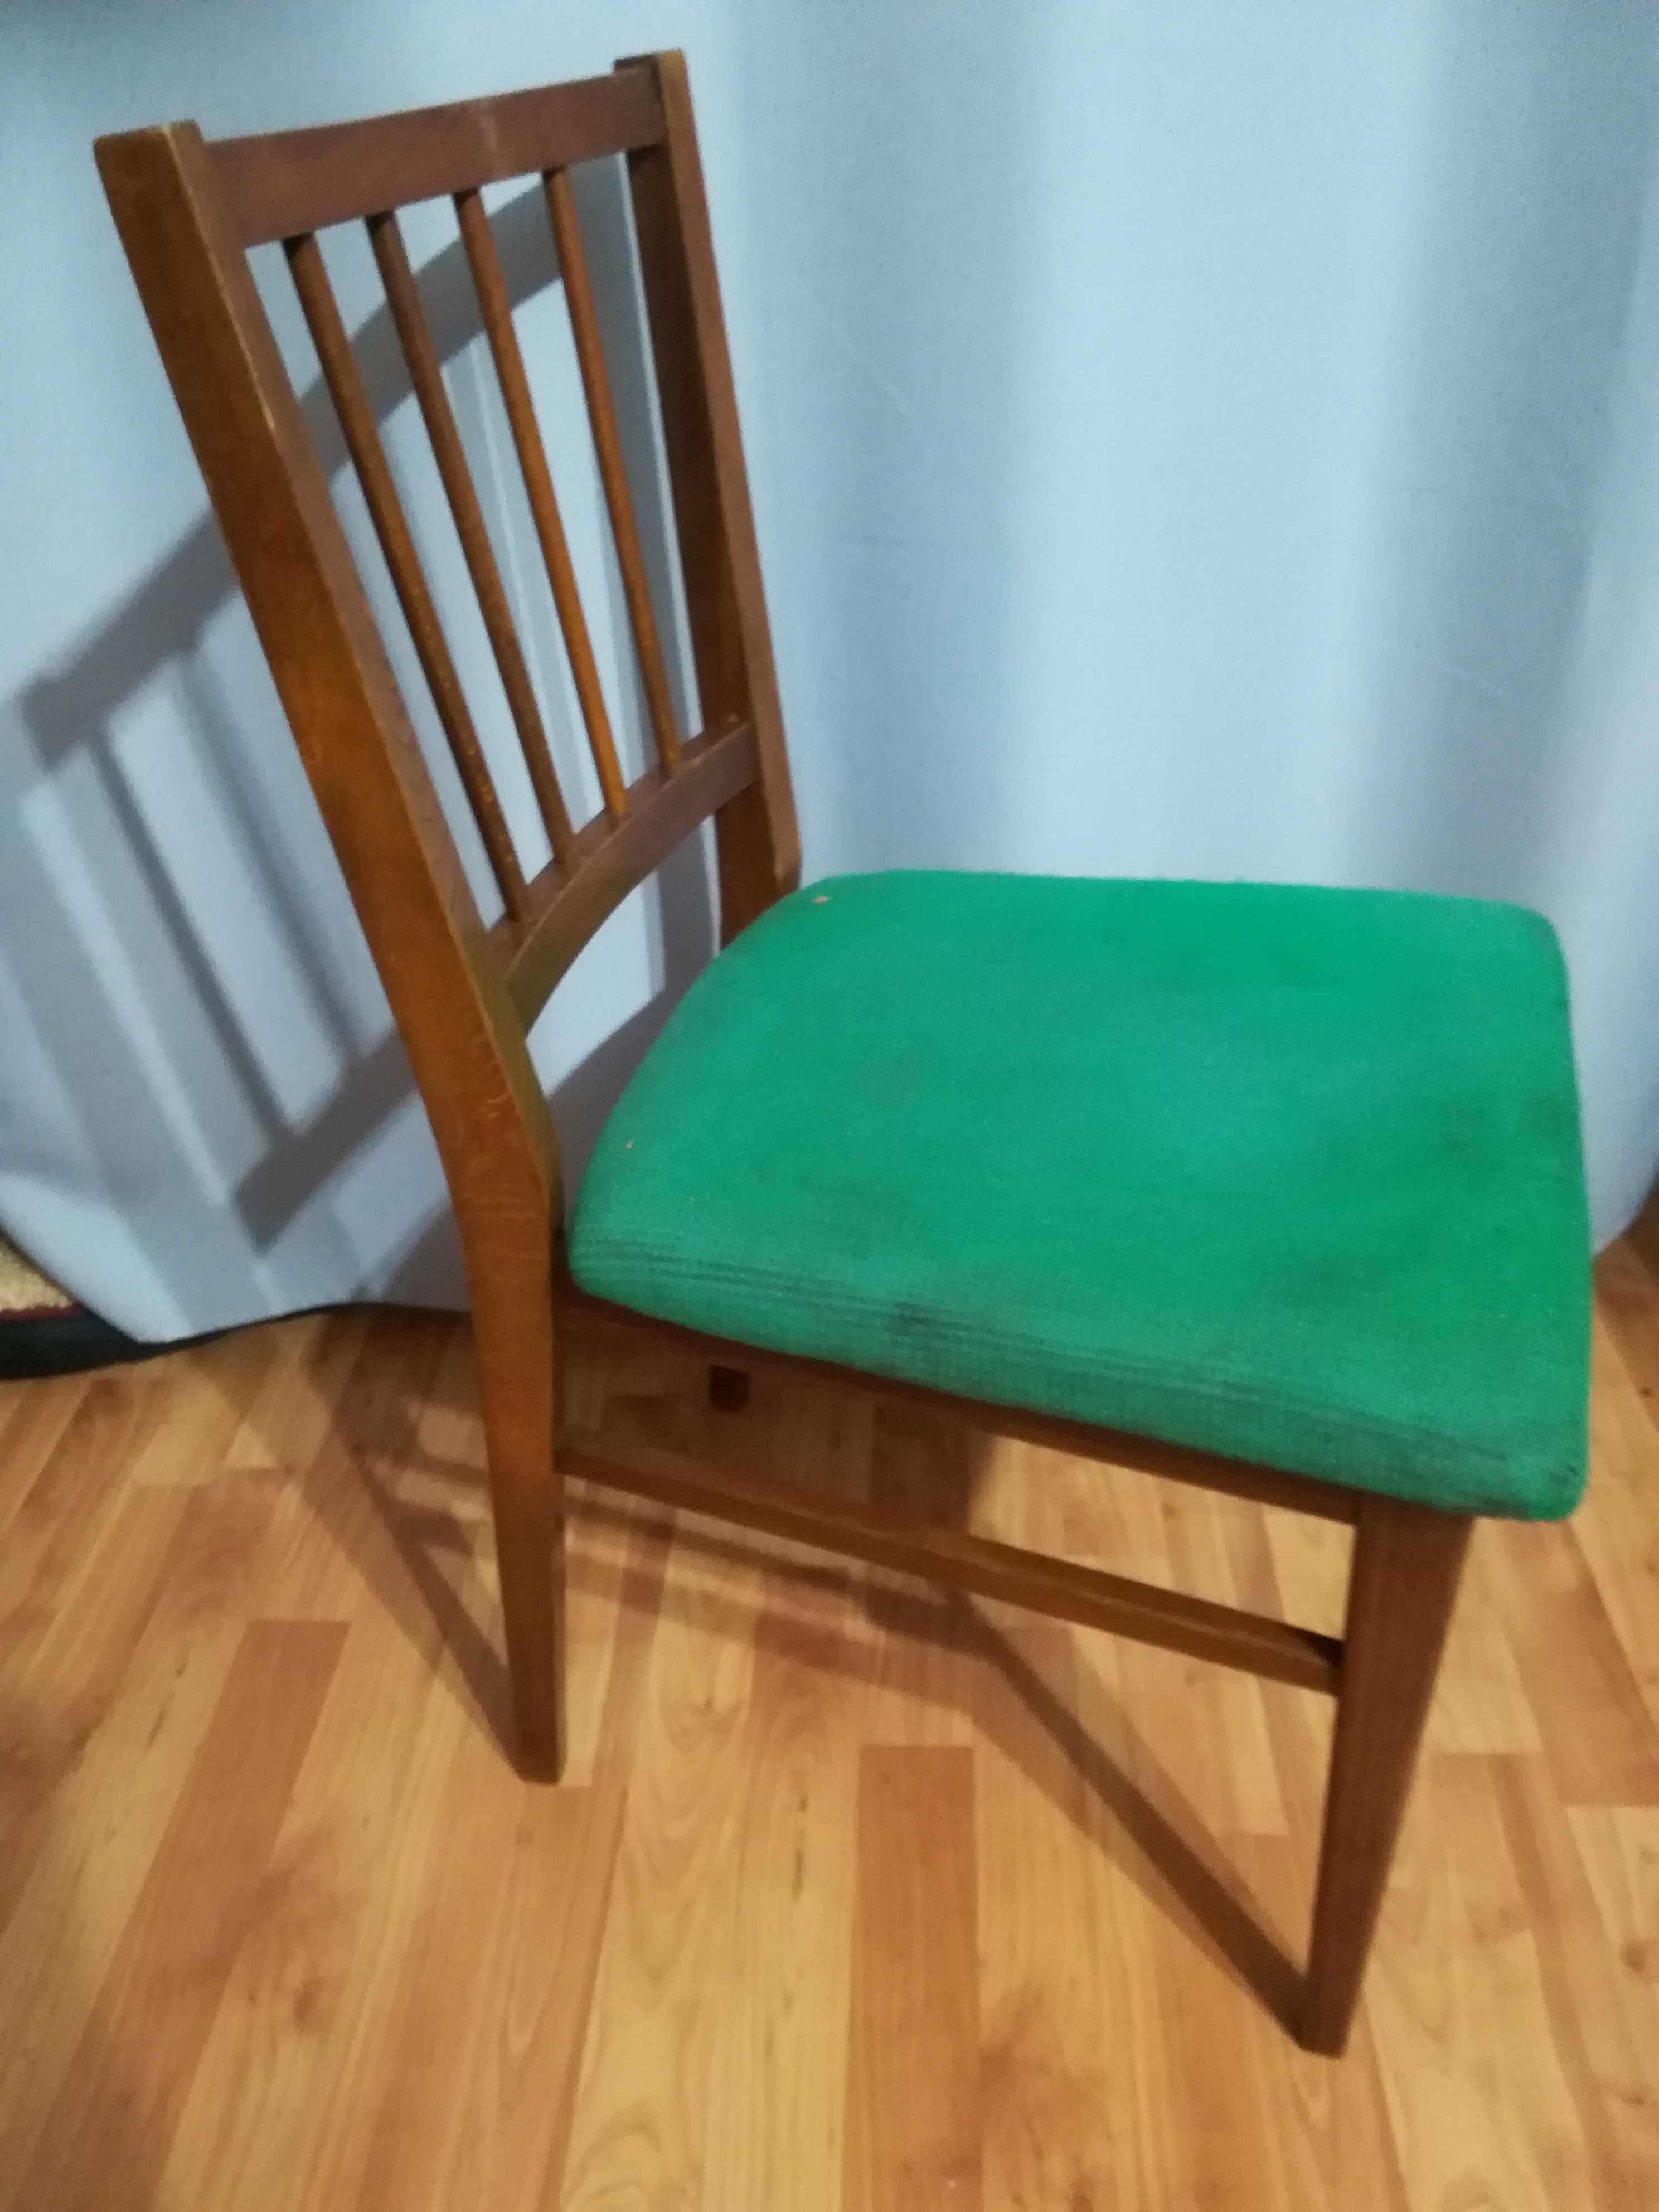 Krzesło z czasów PRL